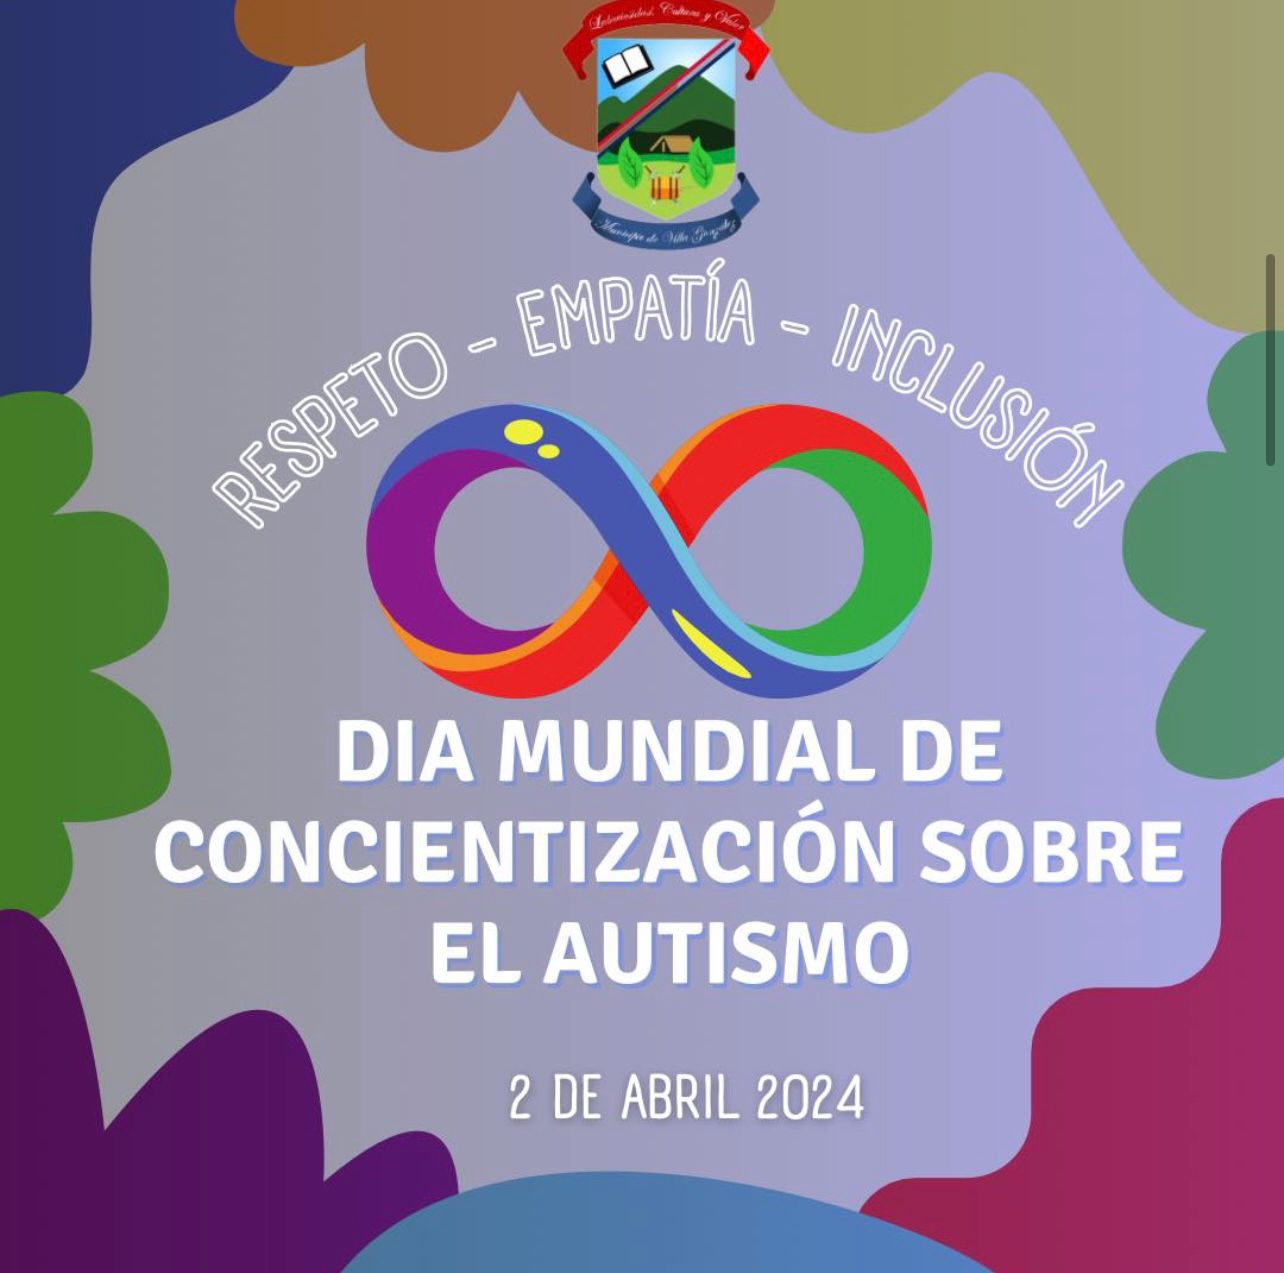 Dia Mundial de Concientizacion sobre el Autismo.